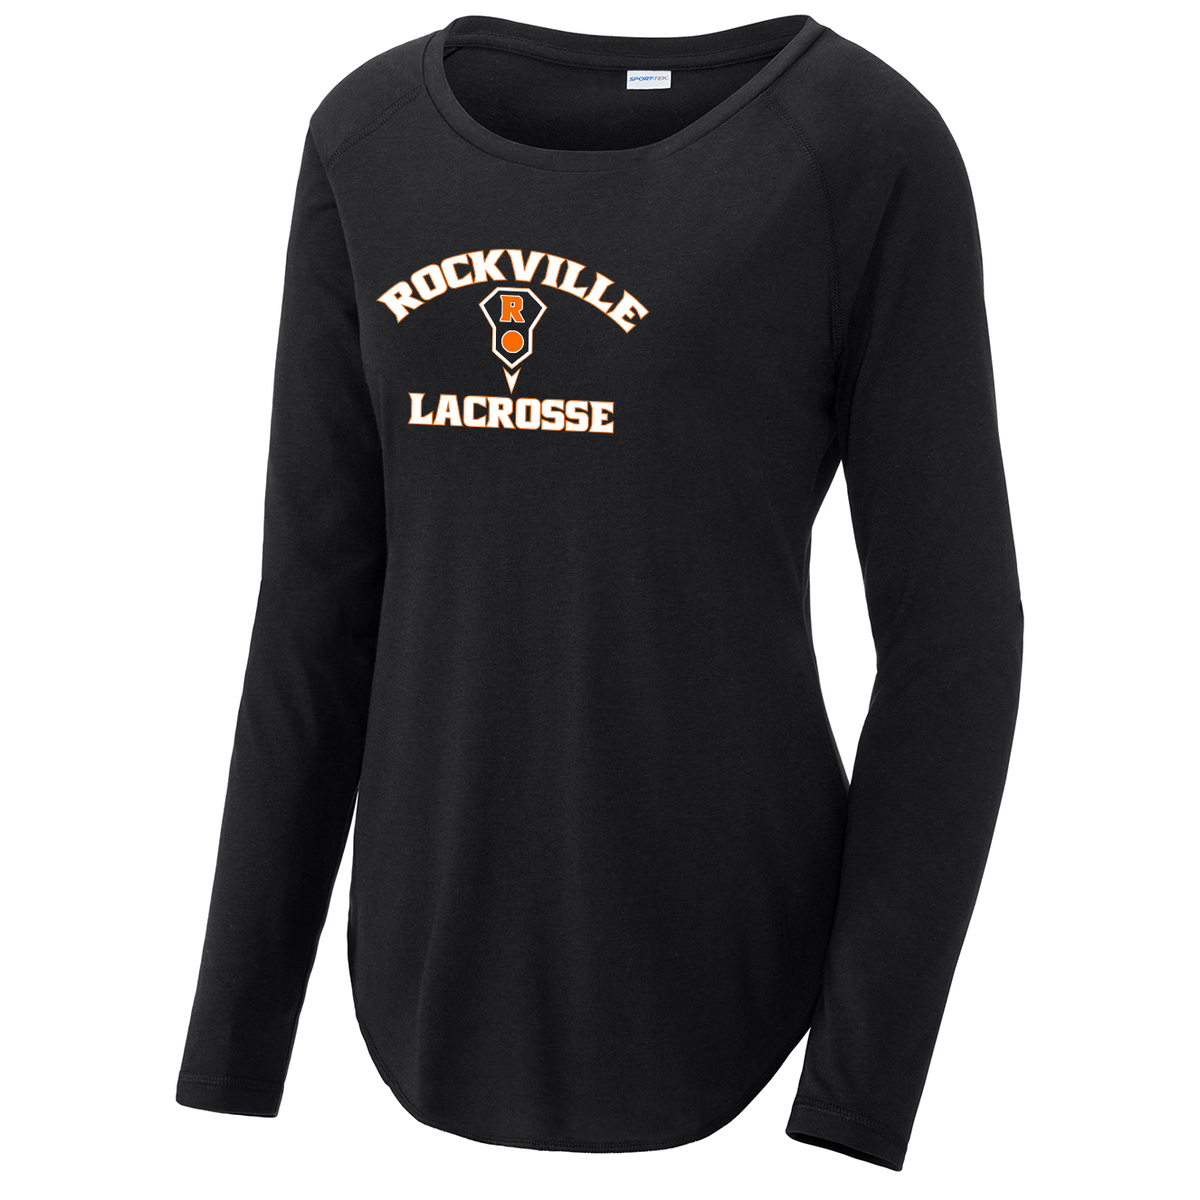 Rockville HS Girls Lacrosse Women's Raglan Long Sleeve CottonTouch